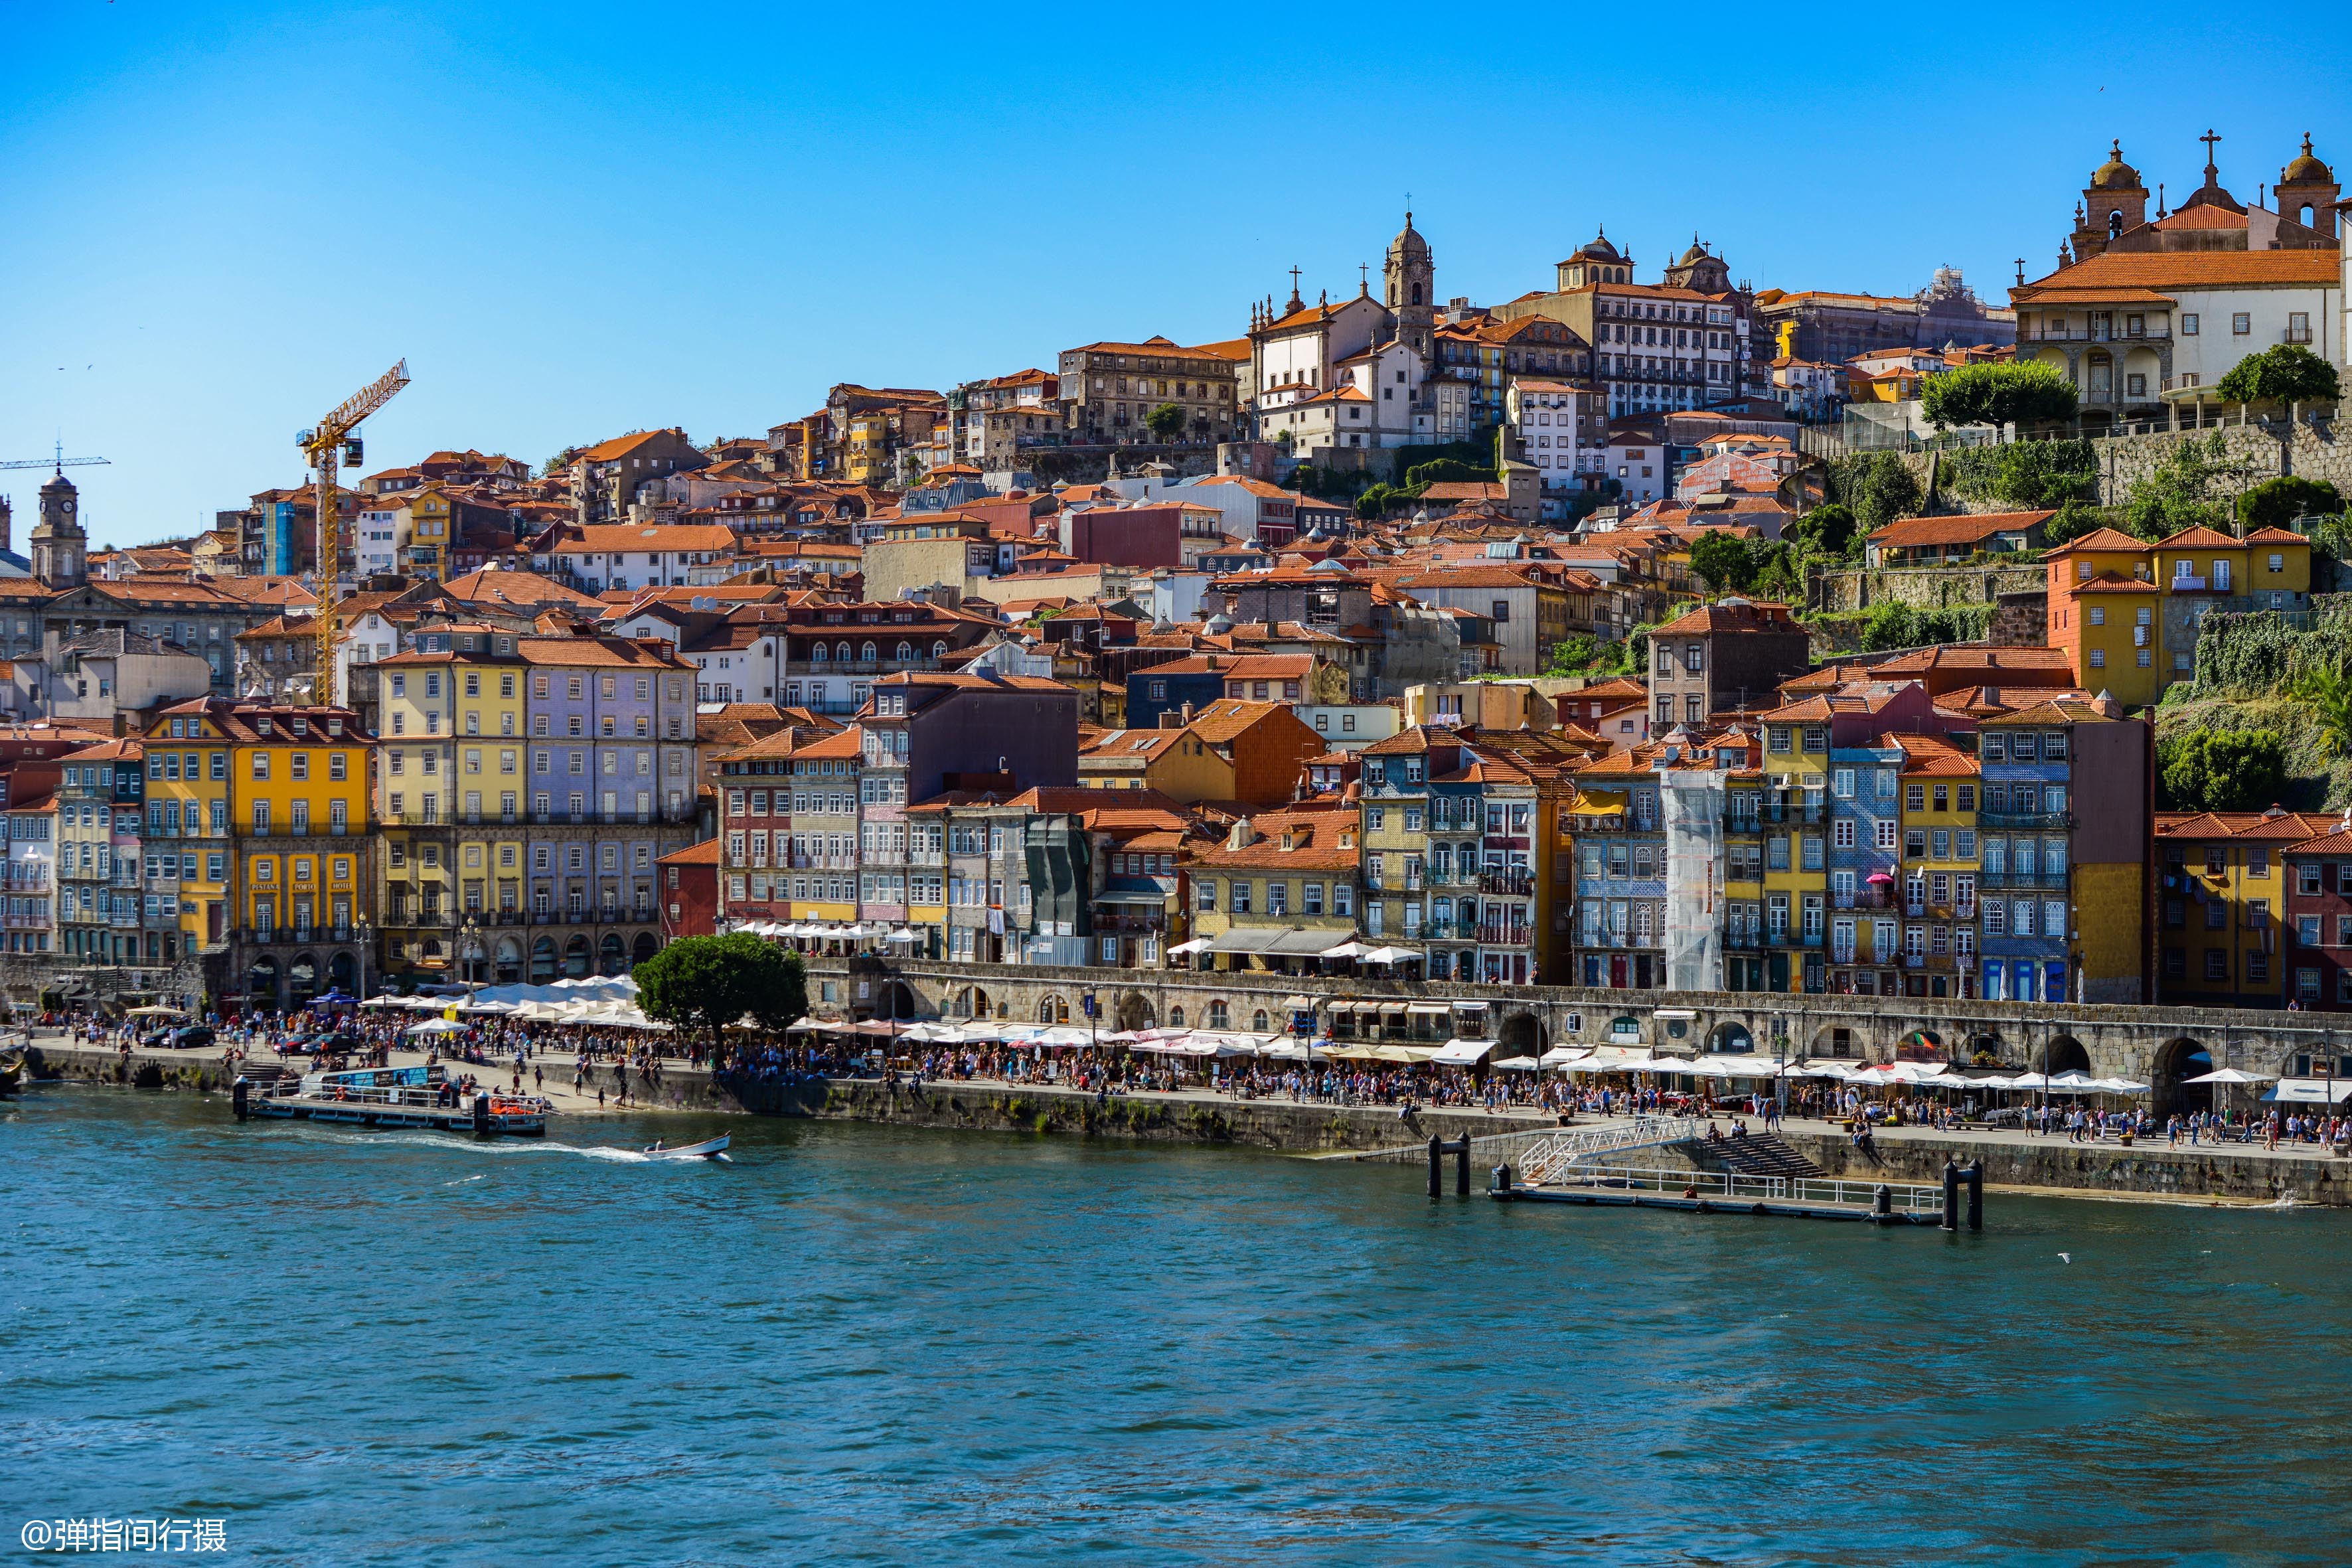 葡萄牙最古老城市古朴老城风情无限越来越多中国游客慕名而去